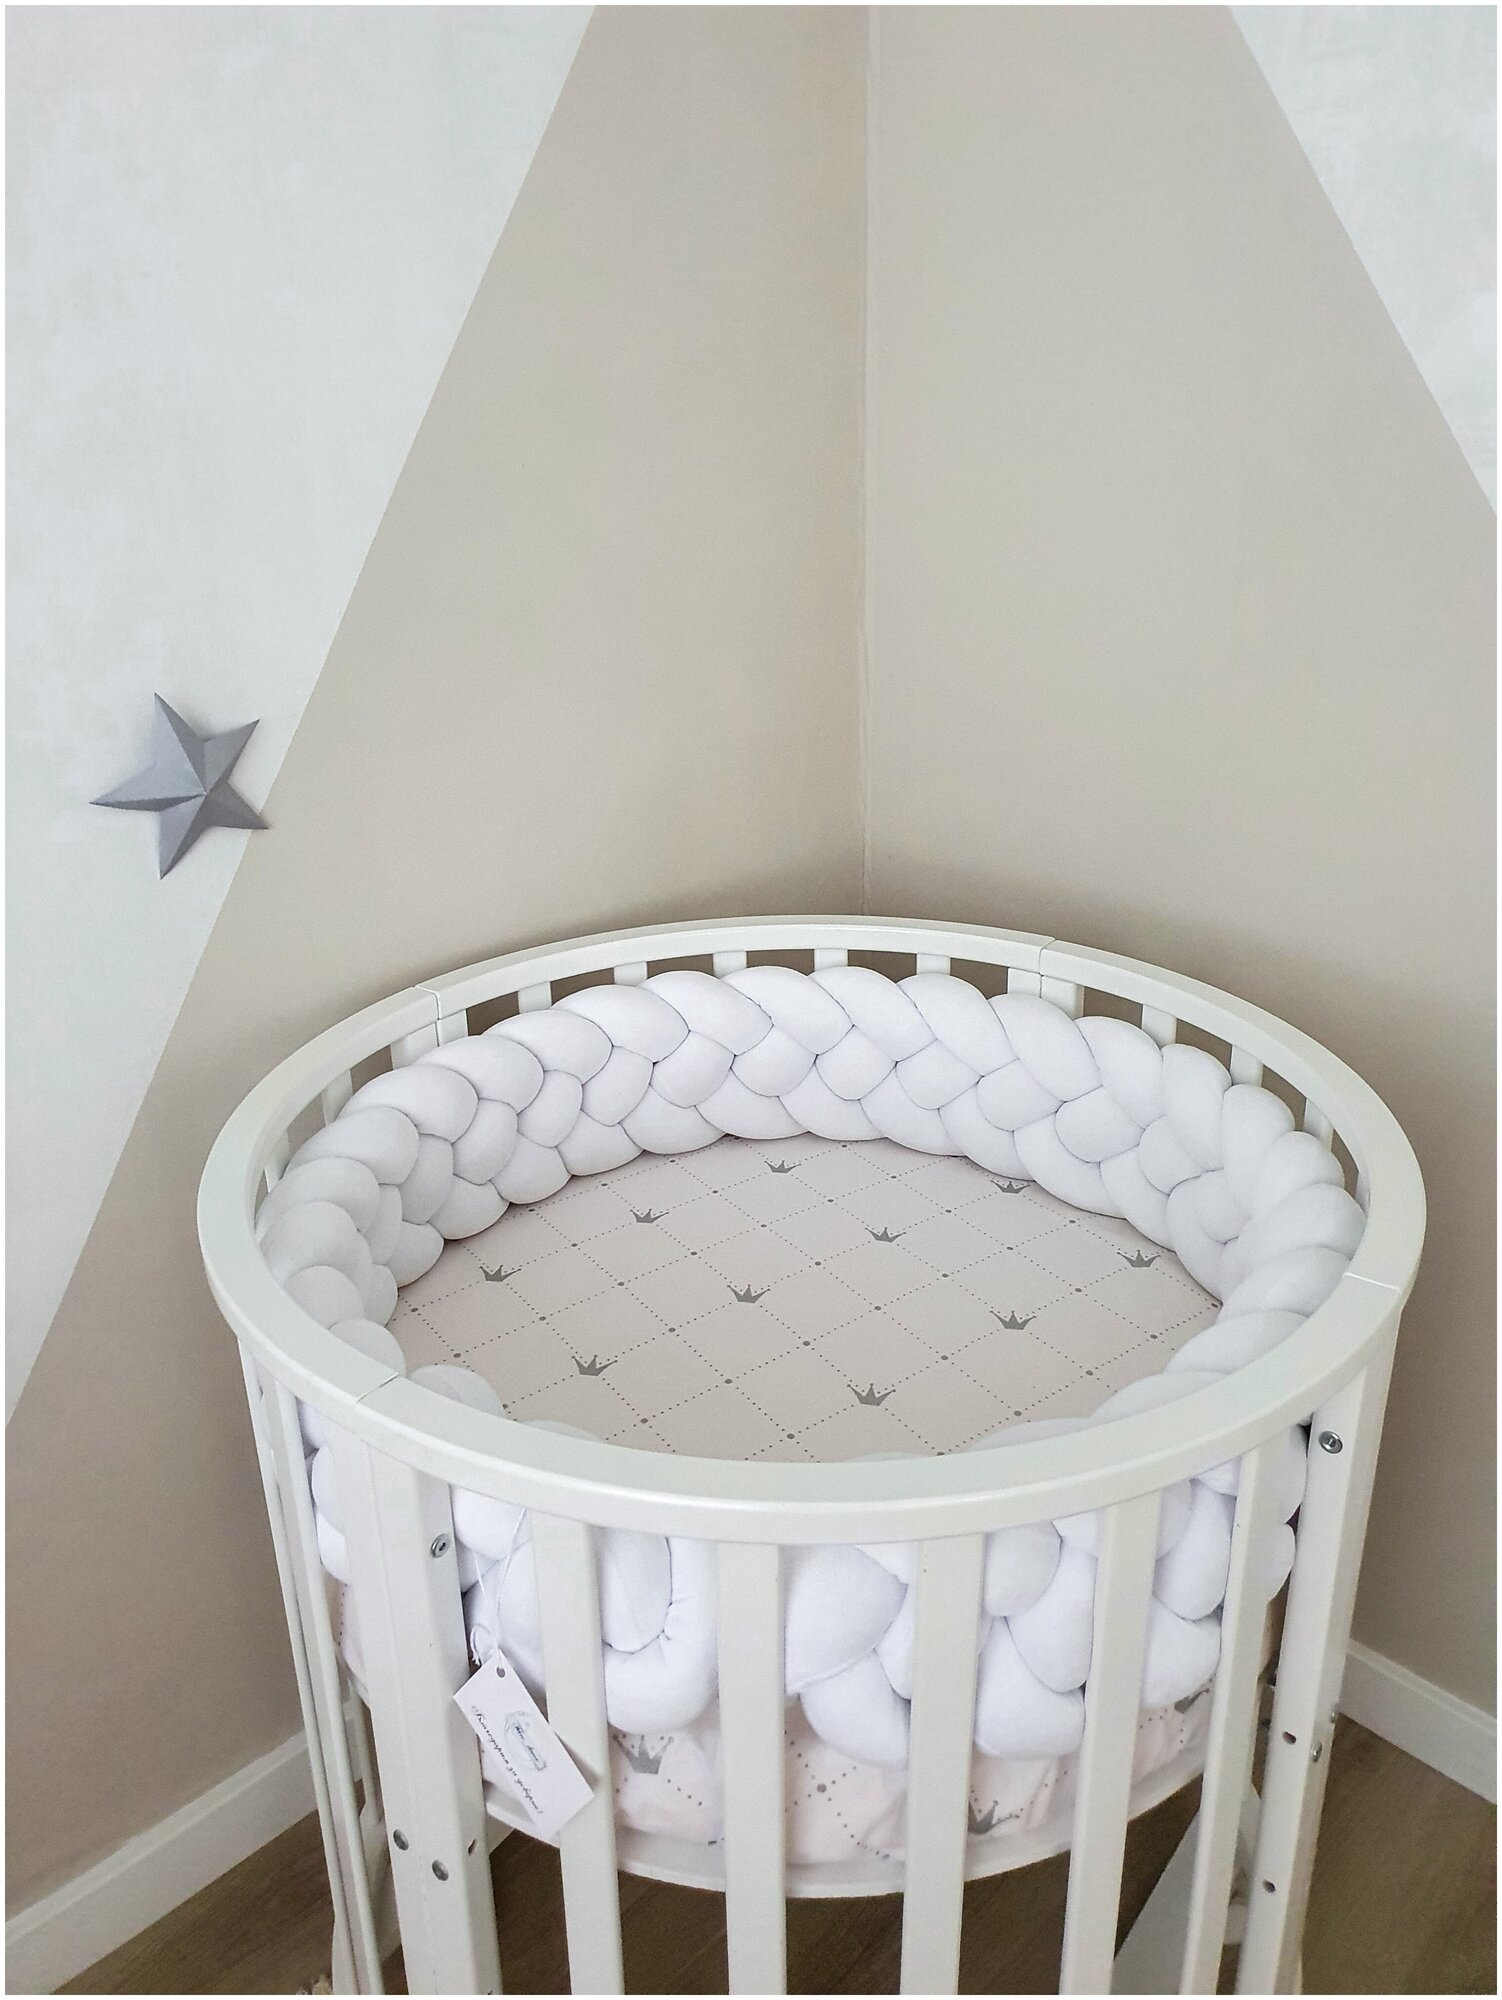 Бортик-коса (косичка) в детскую кроватку из 4 лент для малышей и новорожденных 240 см: подходит для круглой, овальной и прямоугольной кроватей